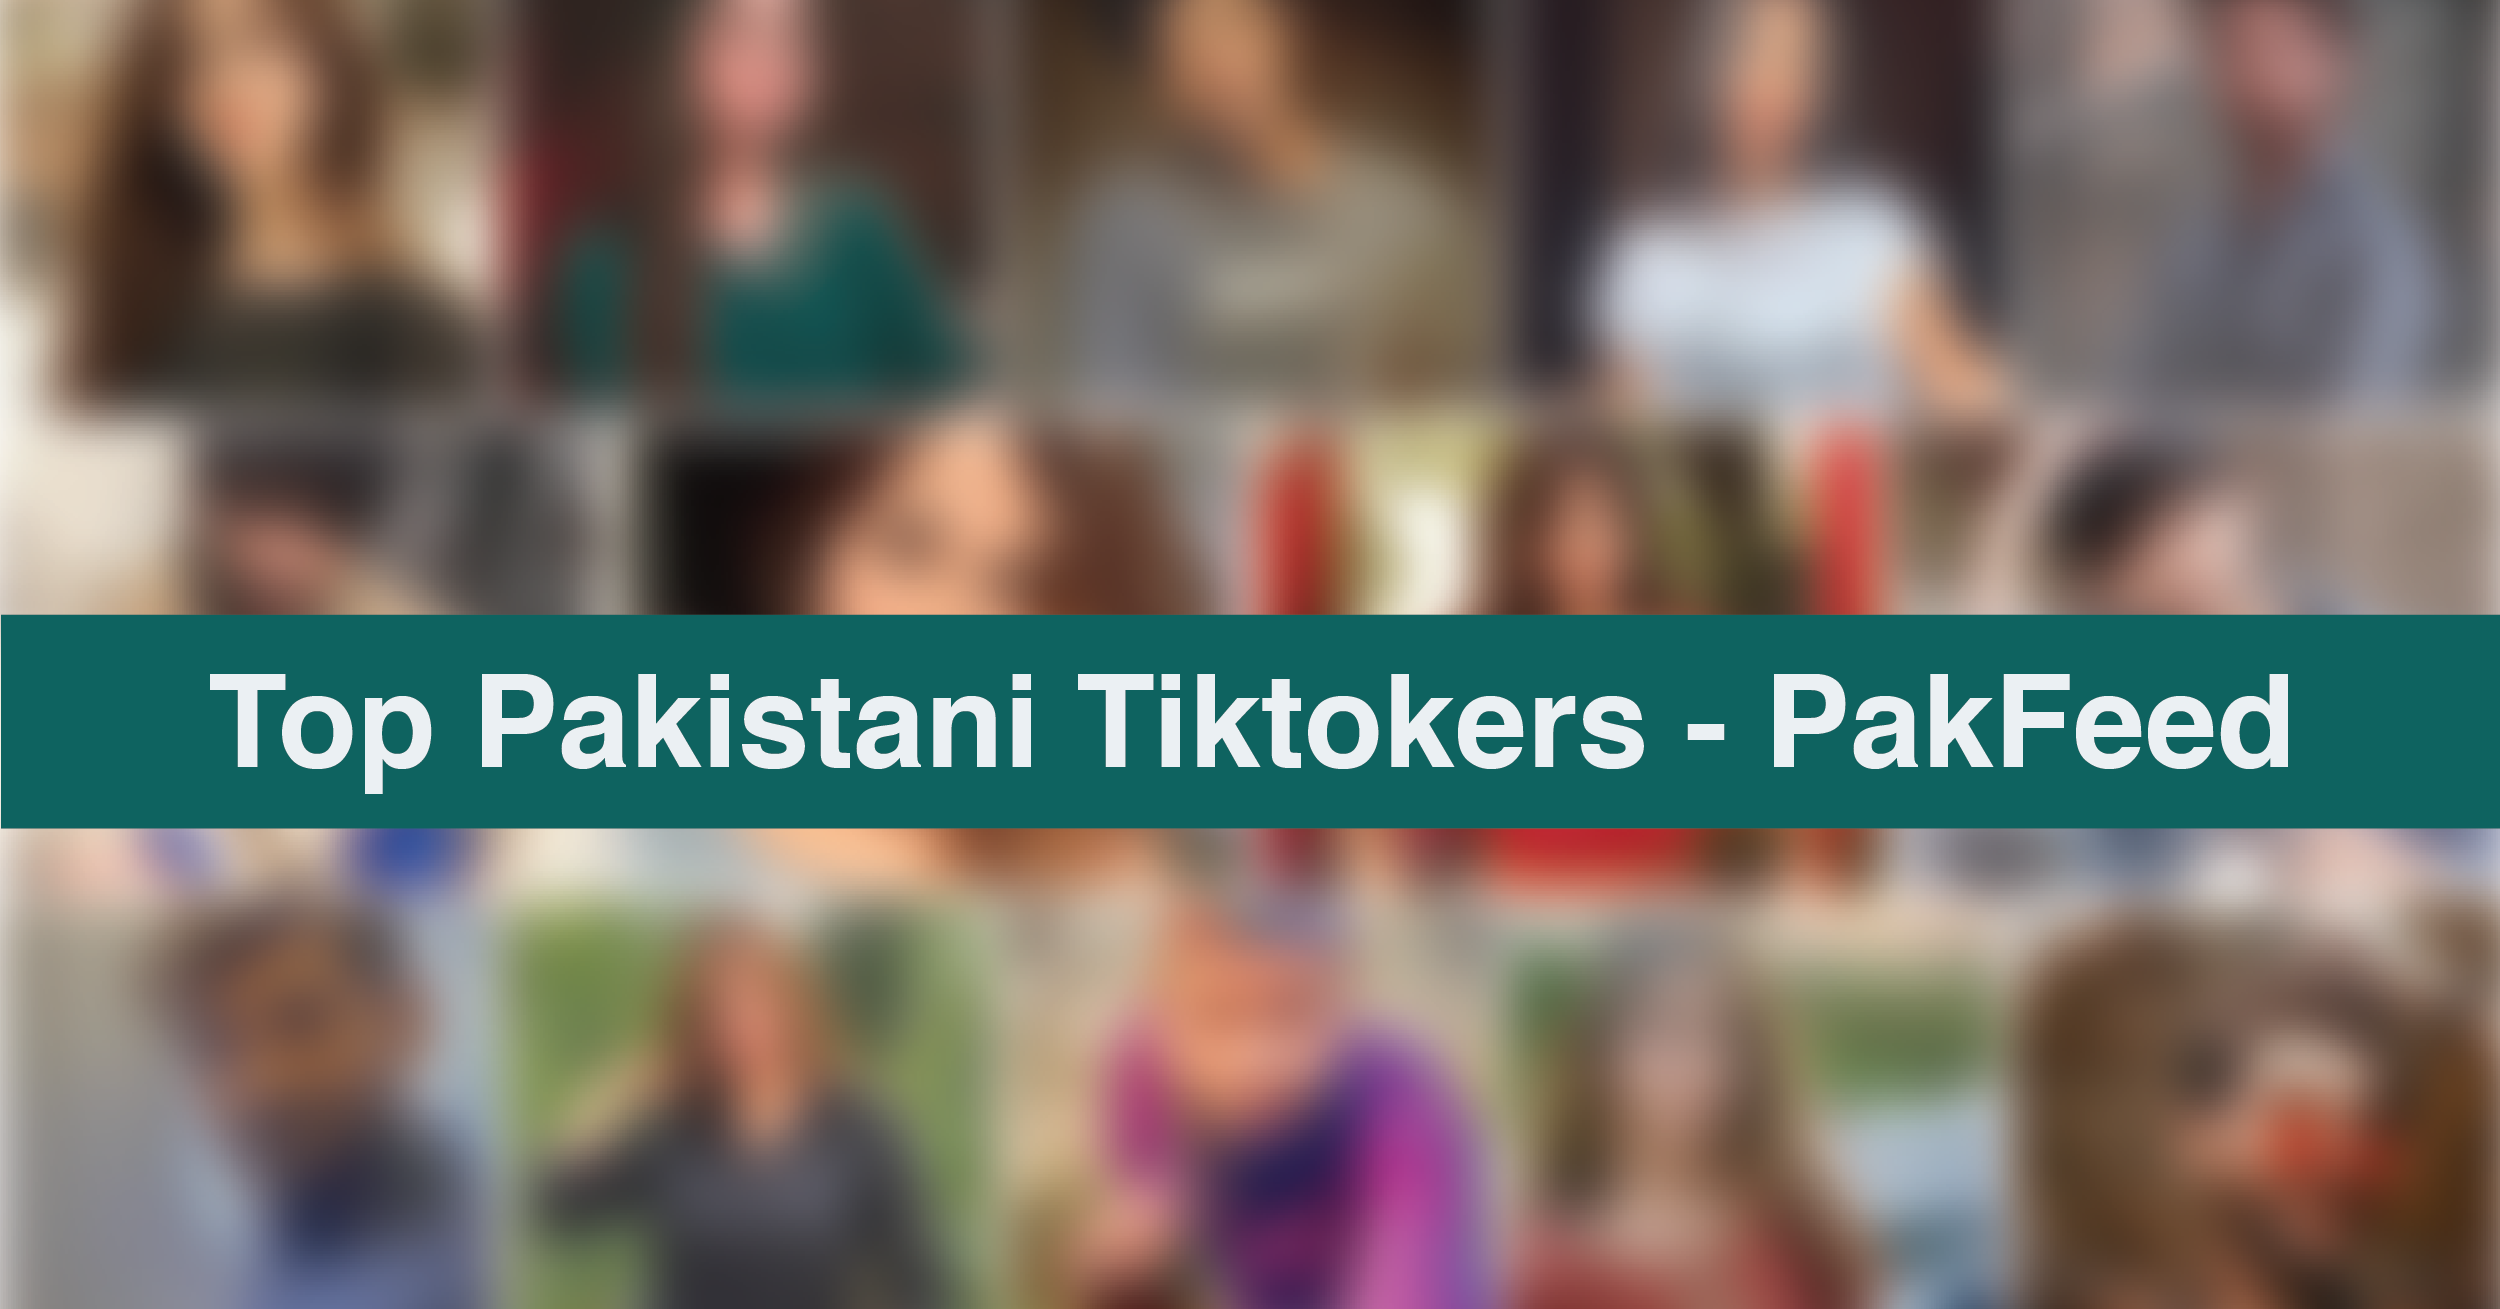 Top Pakistani Tiktokers